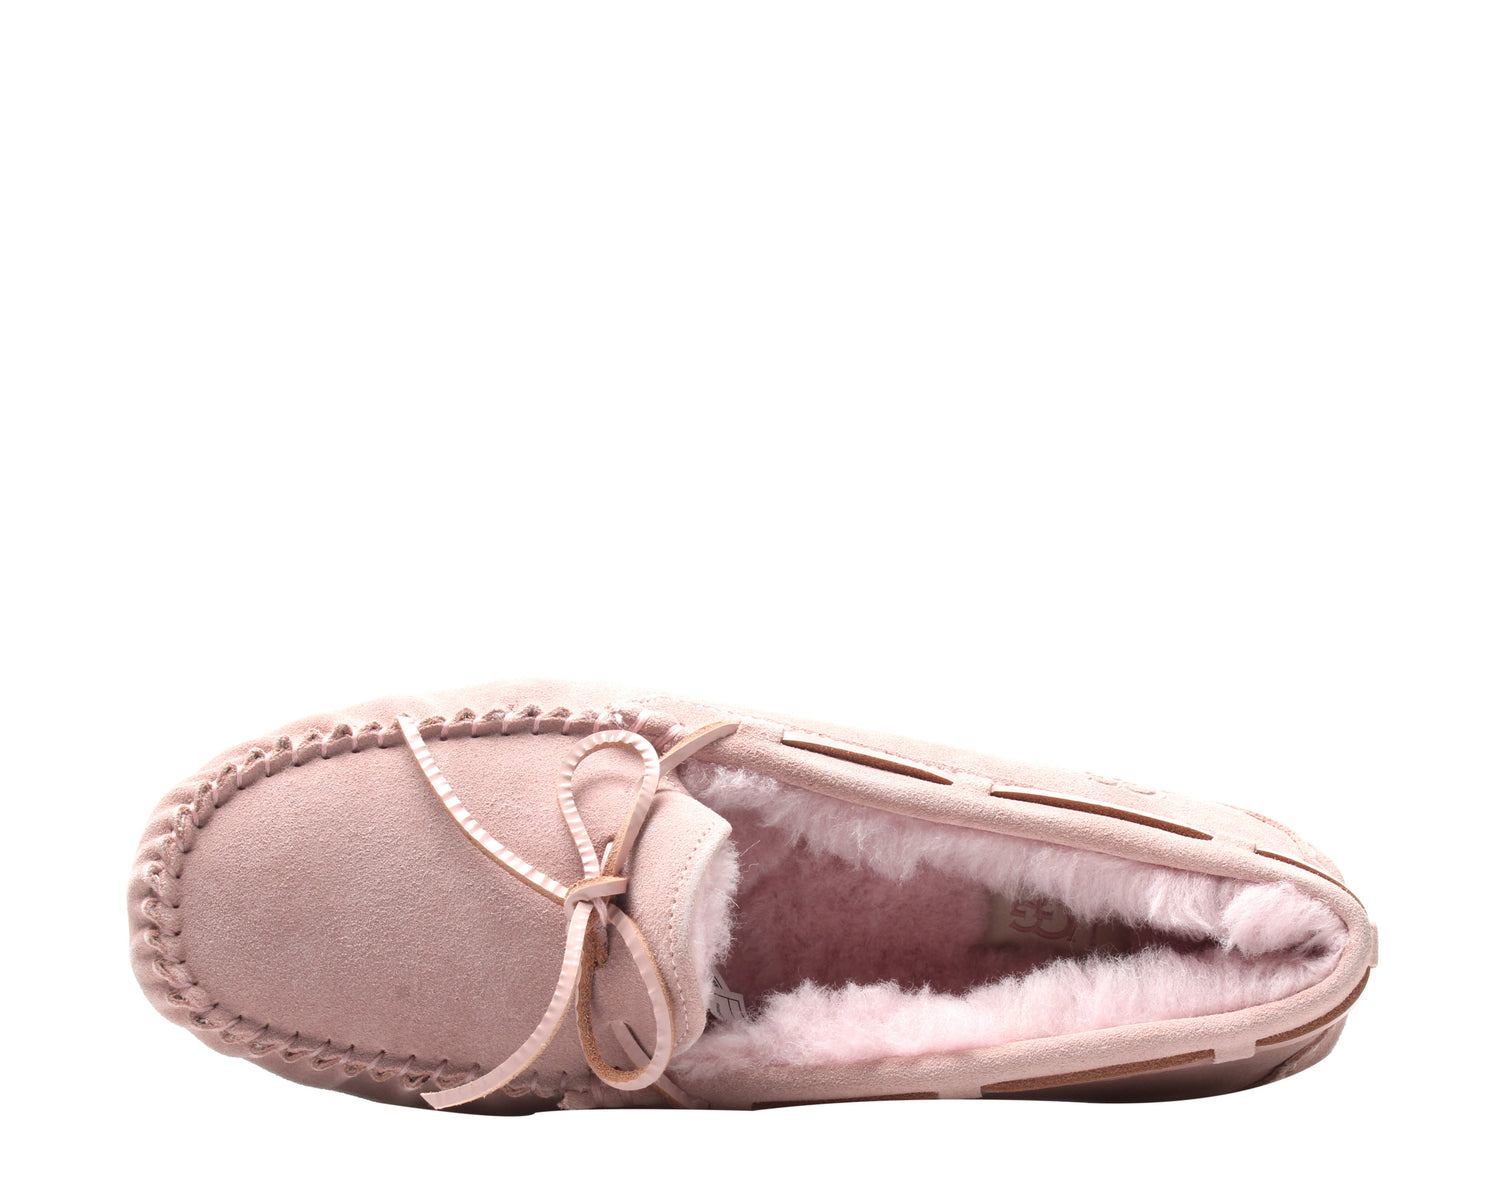 UGG Australia Dakota Women's Moccasin Slippers